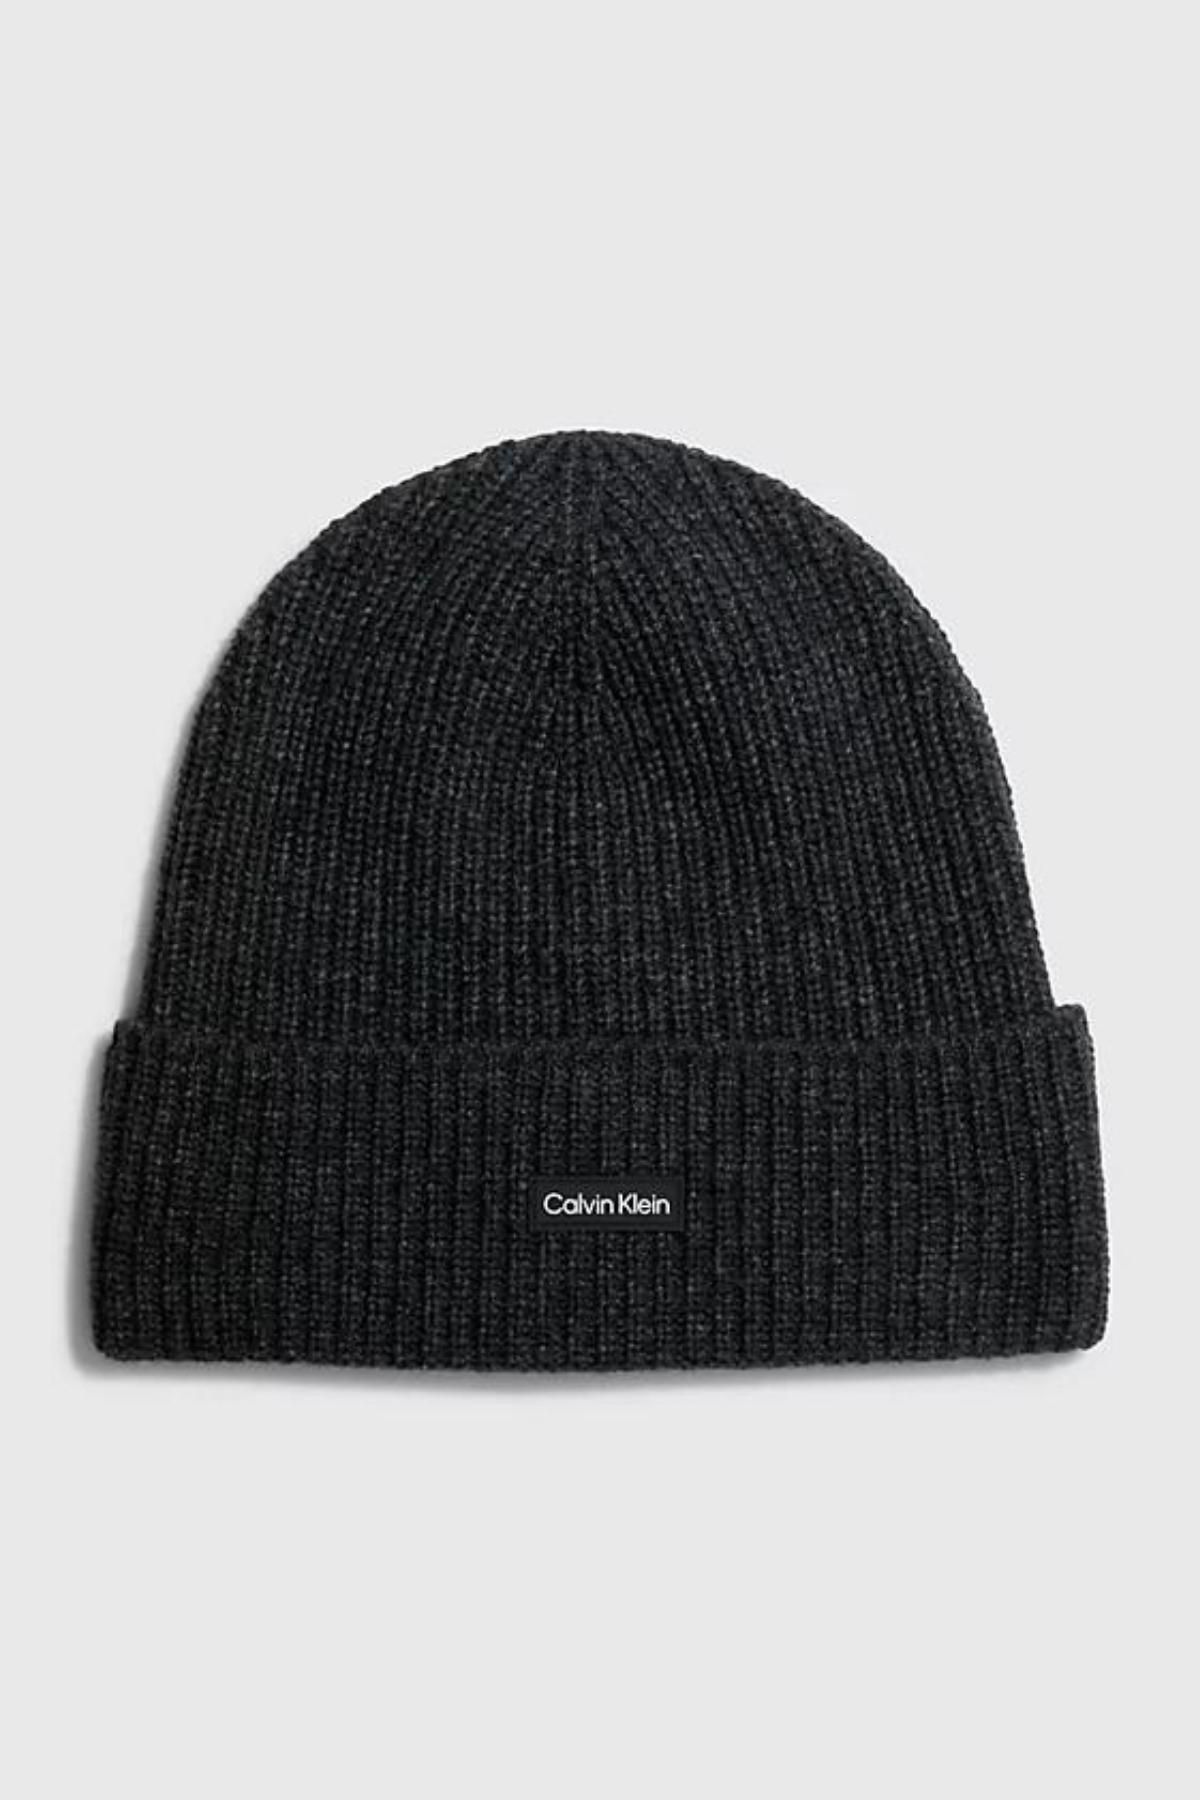 Calvin Klein Erkek Calvin Klein Marka Logolu Nervür Örgülü Geri Dönüştürülmüş Yün Karışımlı Siyah Şapka K50k51098